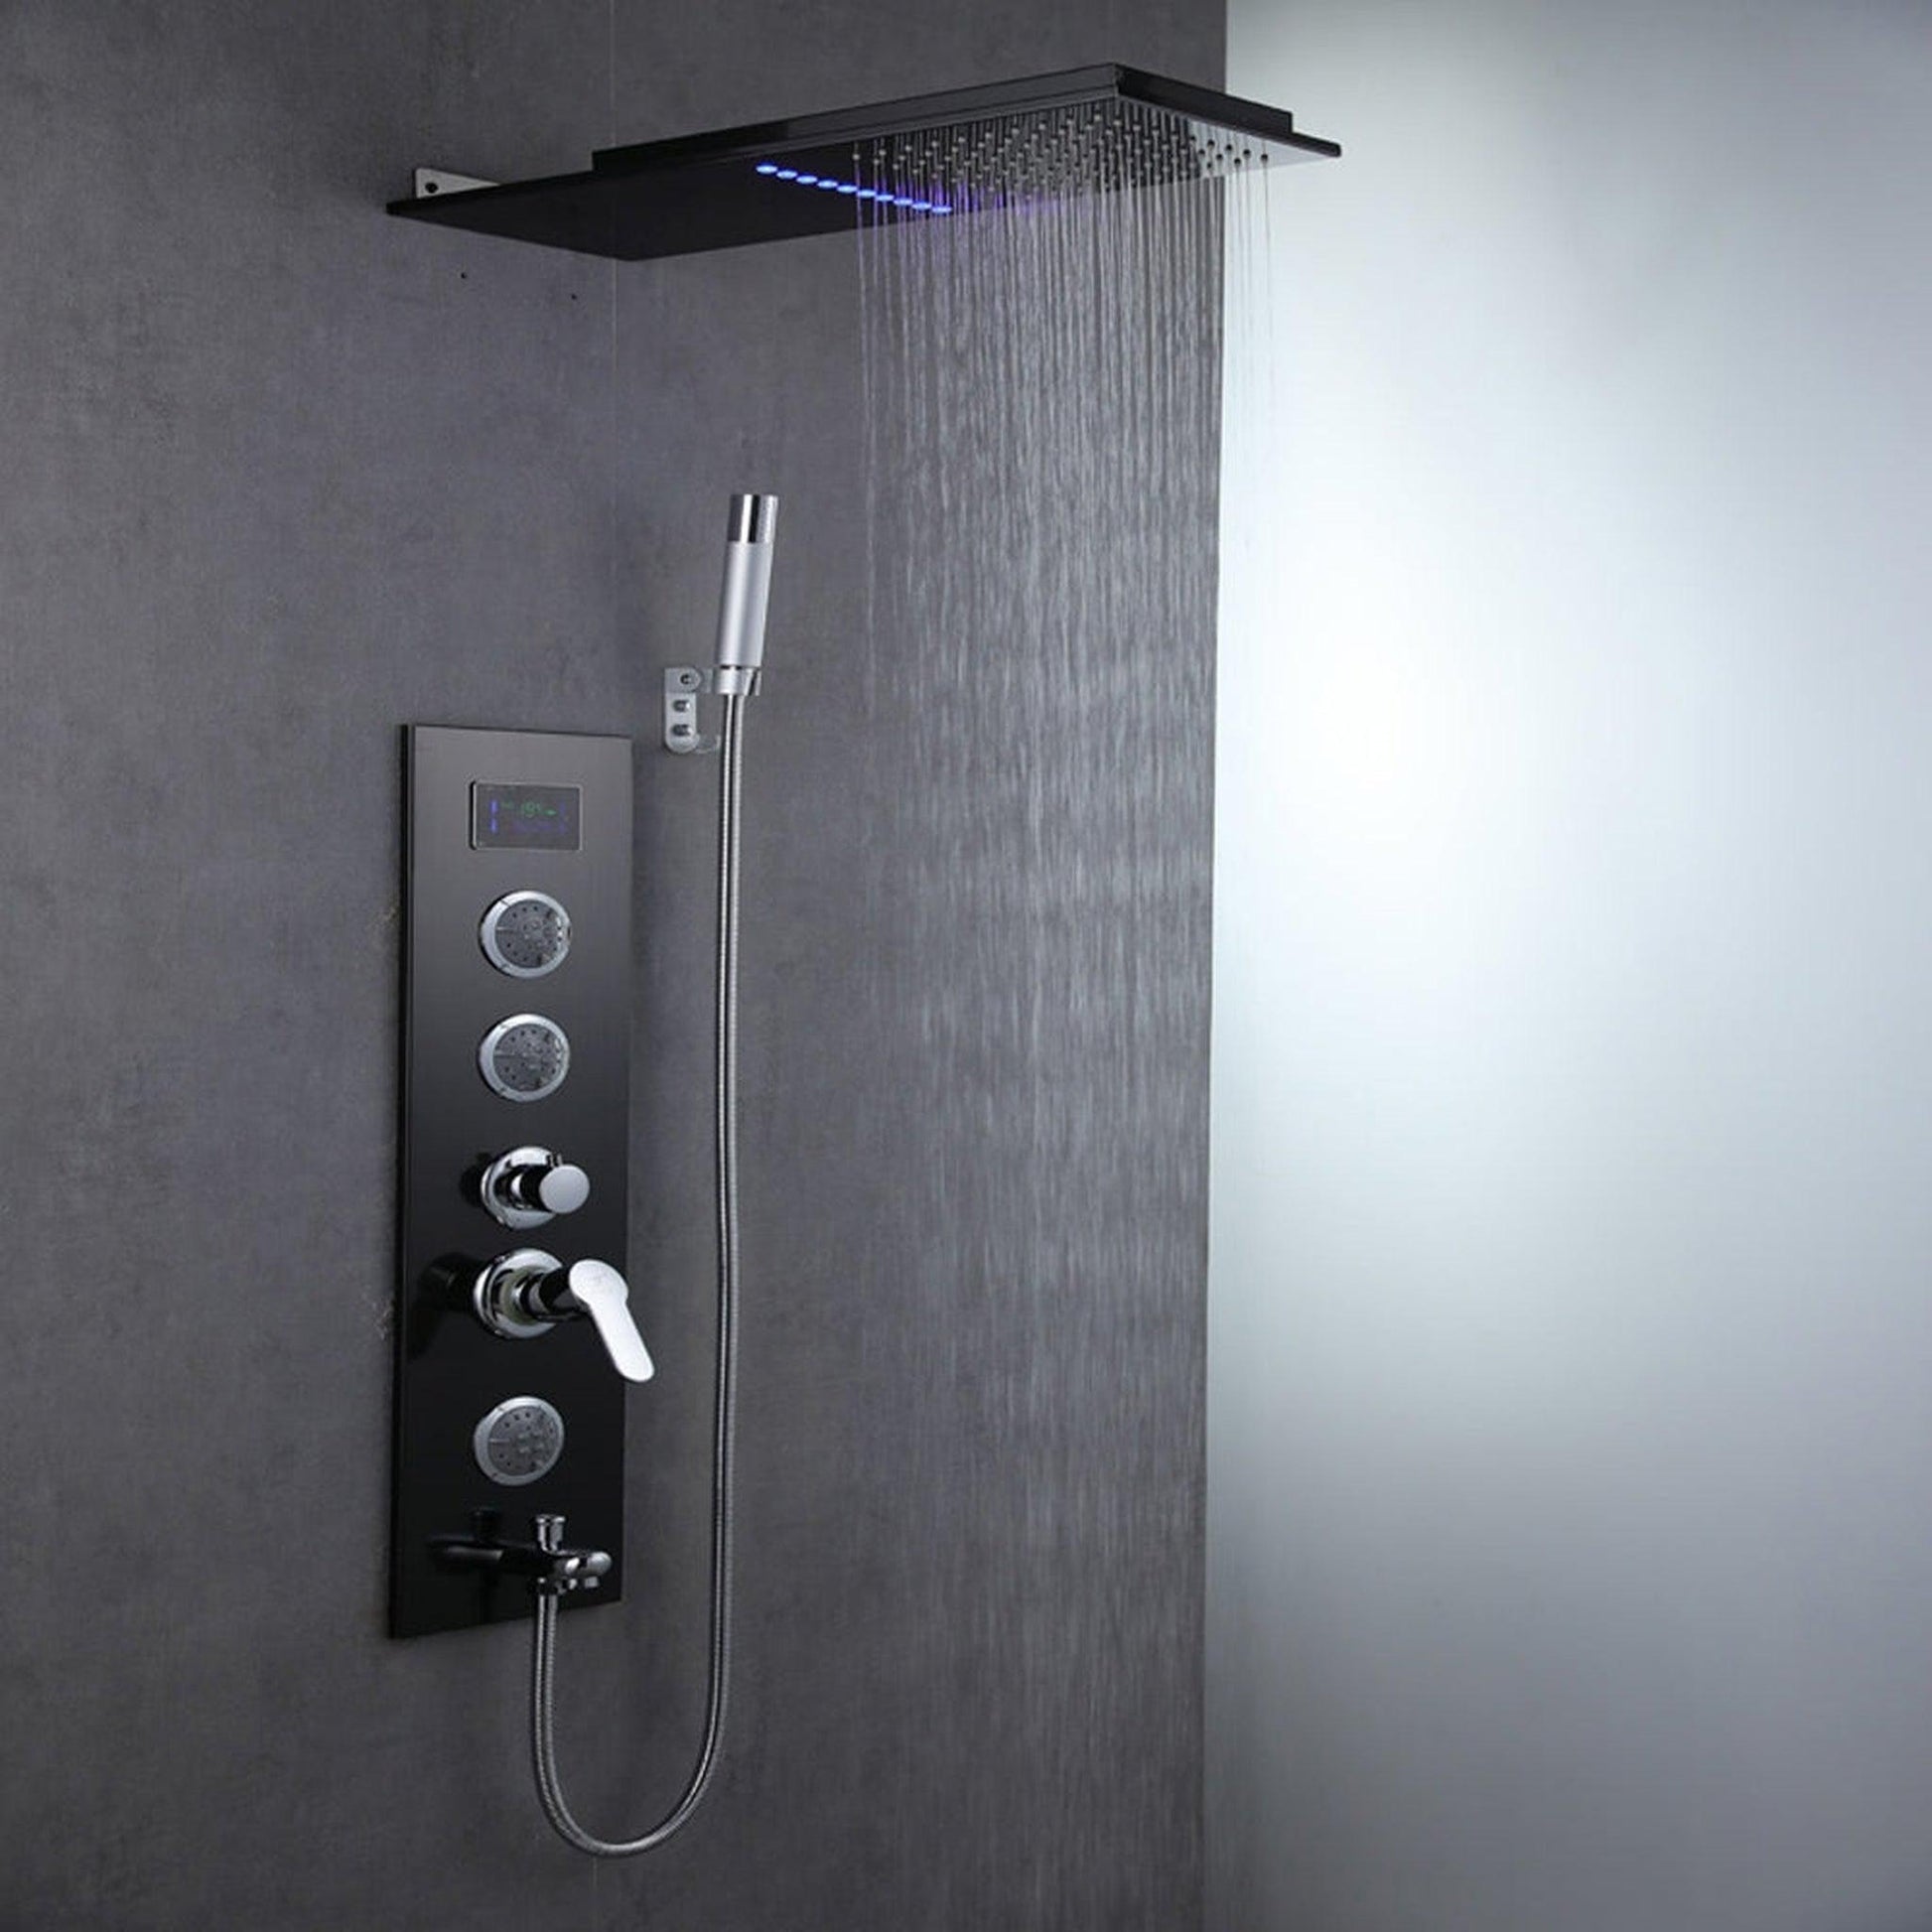 Fontana Ferrara Matte Black Wall Mounted Digital Rainfall Shower System With Hand Shower